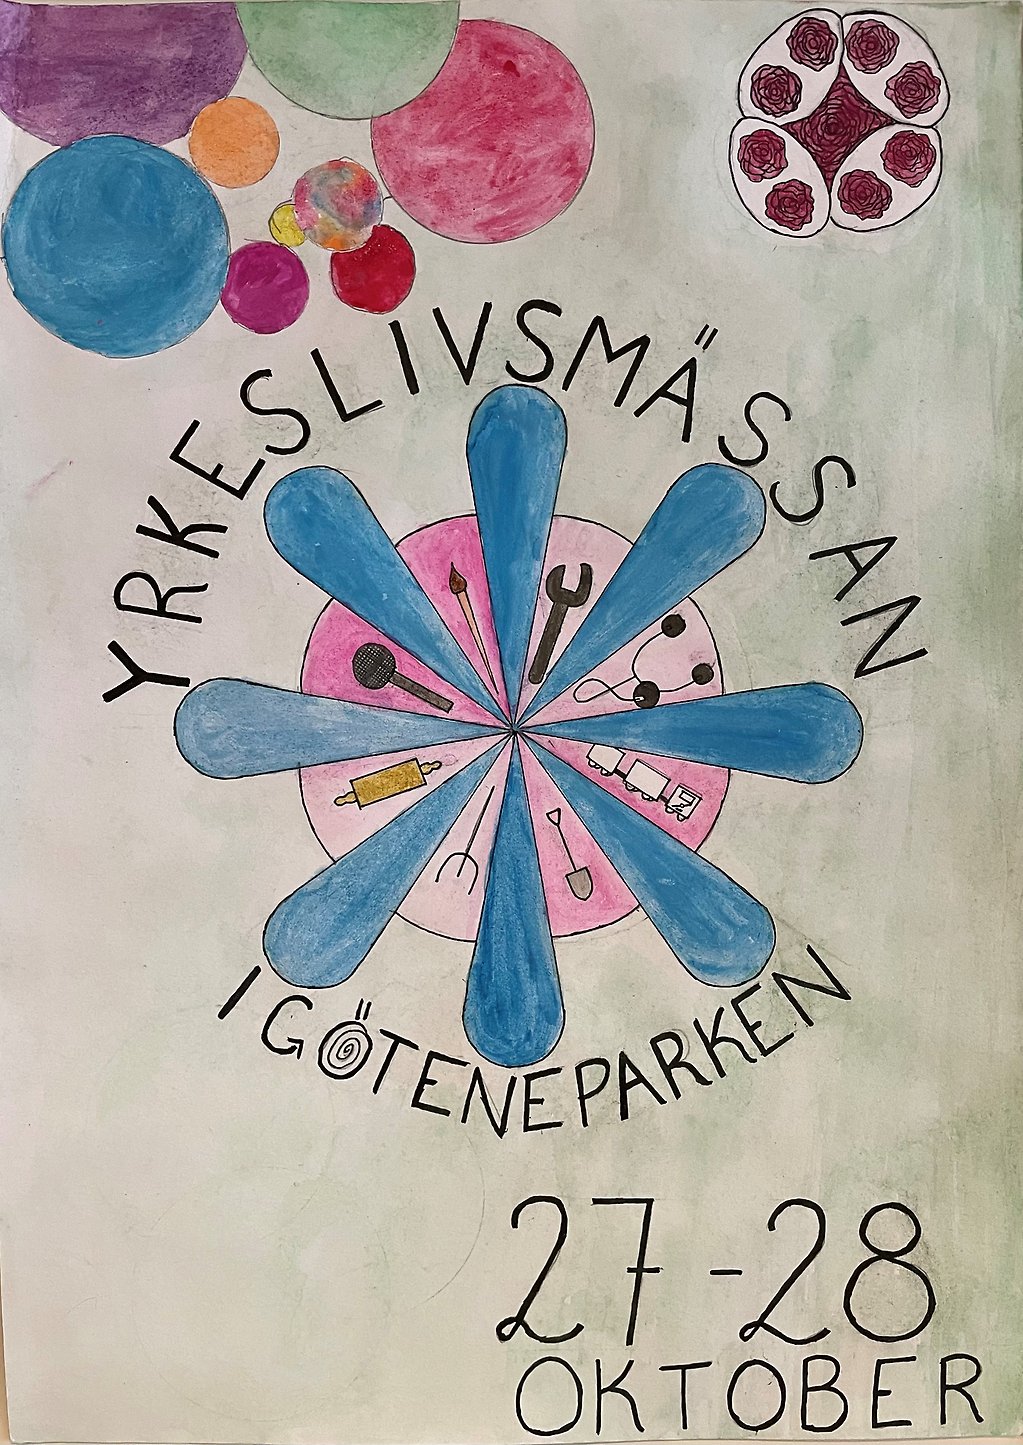 En handmålad affisch med text "Yrkeslivsmässan 2022 i Göteneparken, 27-28 oktober".